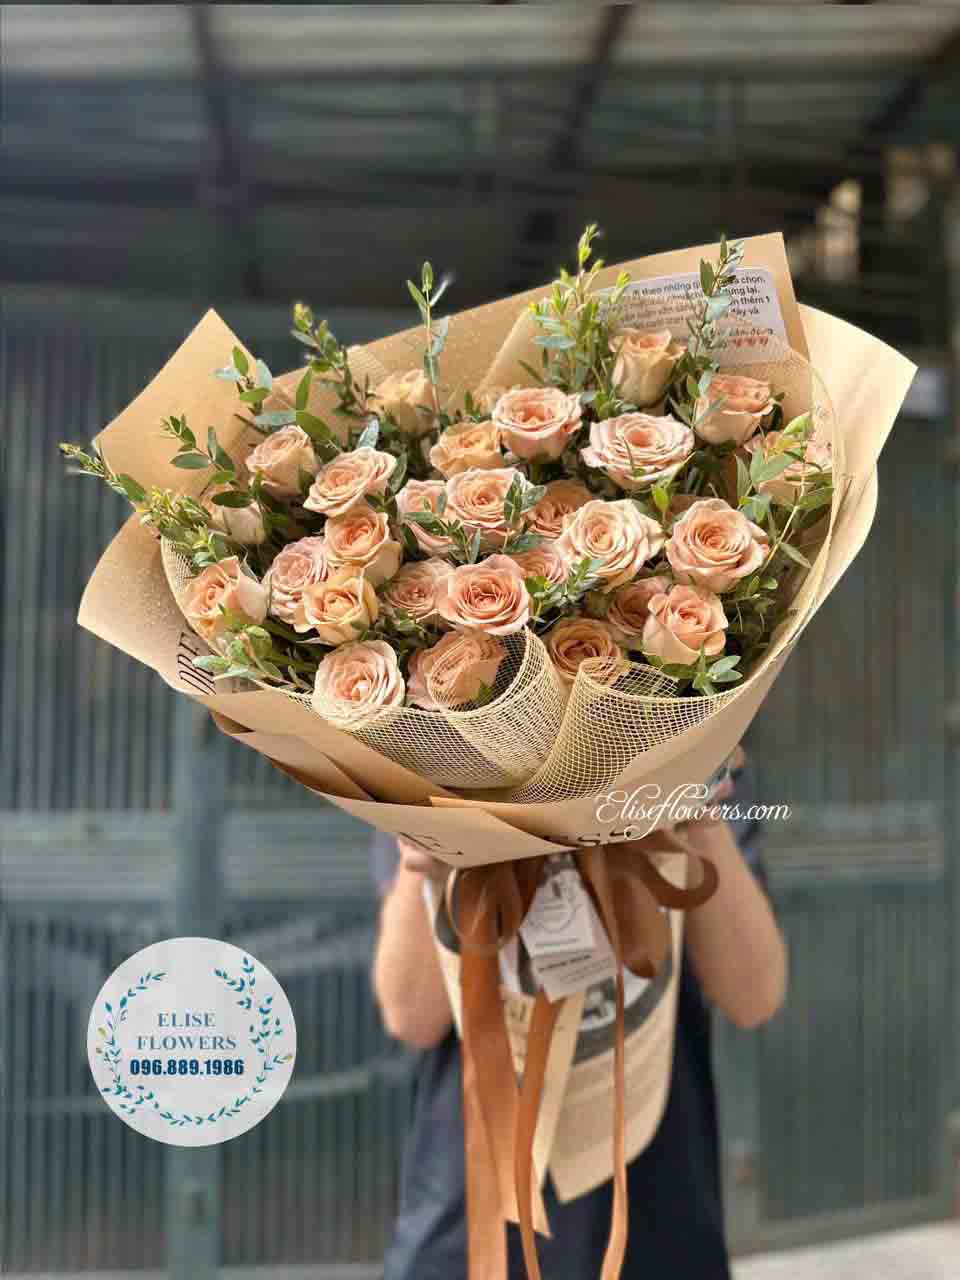 Bó hoa hồng ngoại màu nâu cafe | Bó hoa chúc mừng sinh nhật bạn thân đẹp | Điện hoa chúc mừng sinh nhật đẹp tại Hà Nội